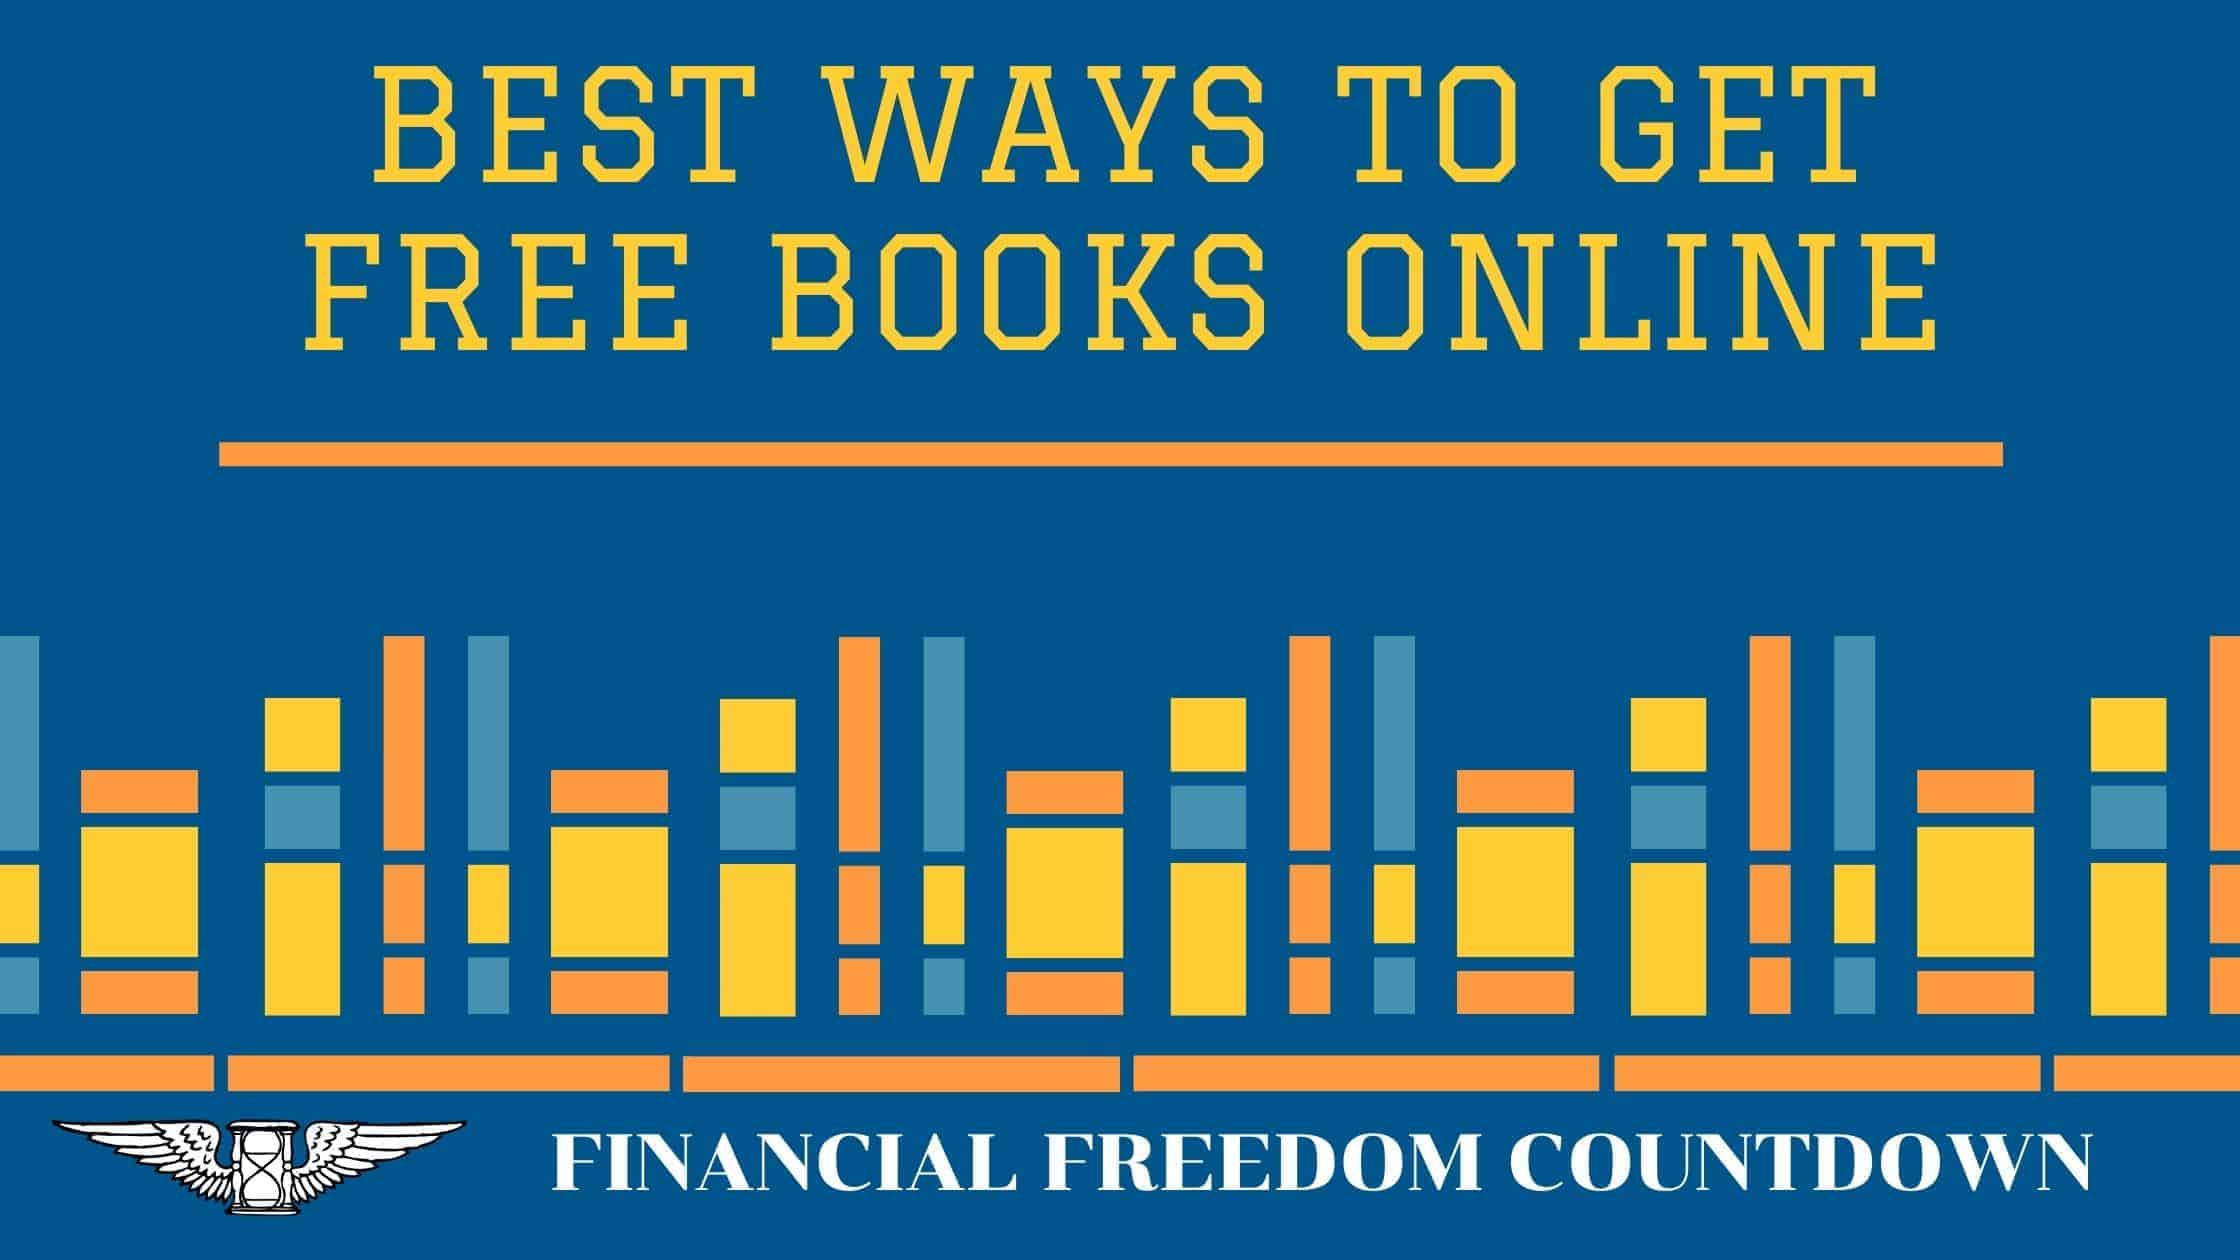 Best Ways to Get Free Books Online